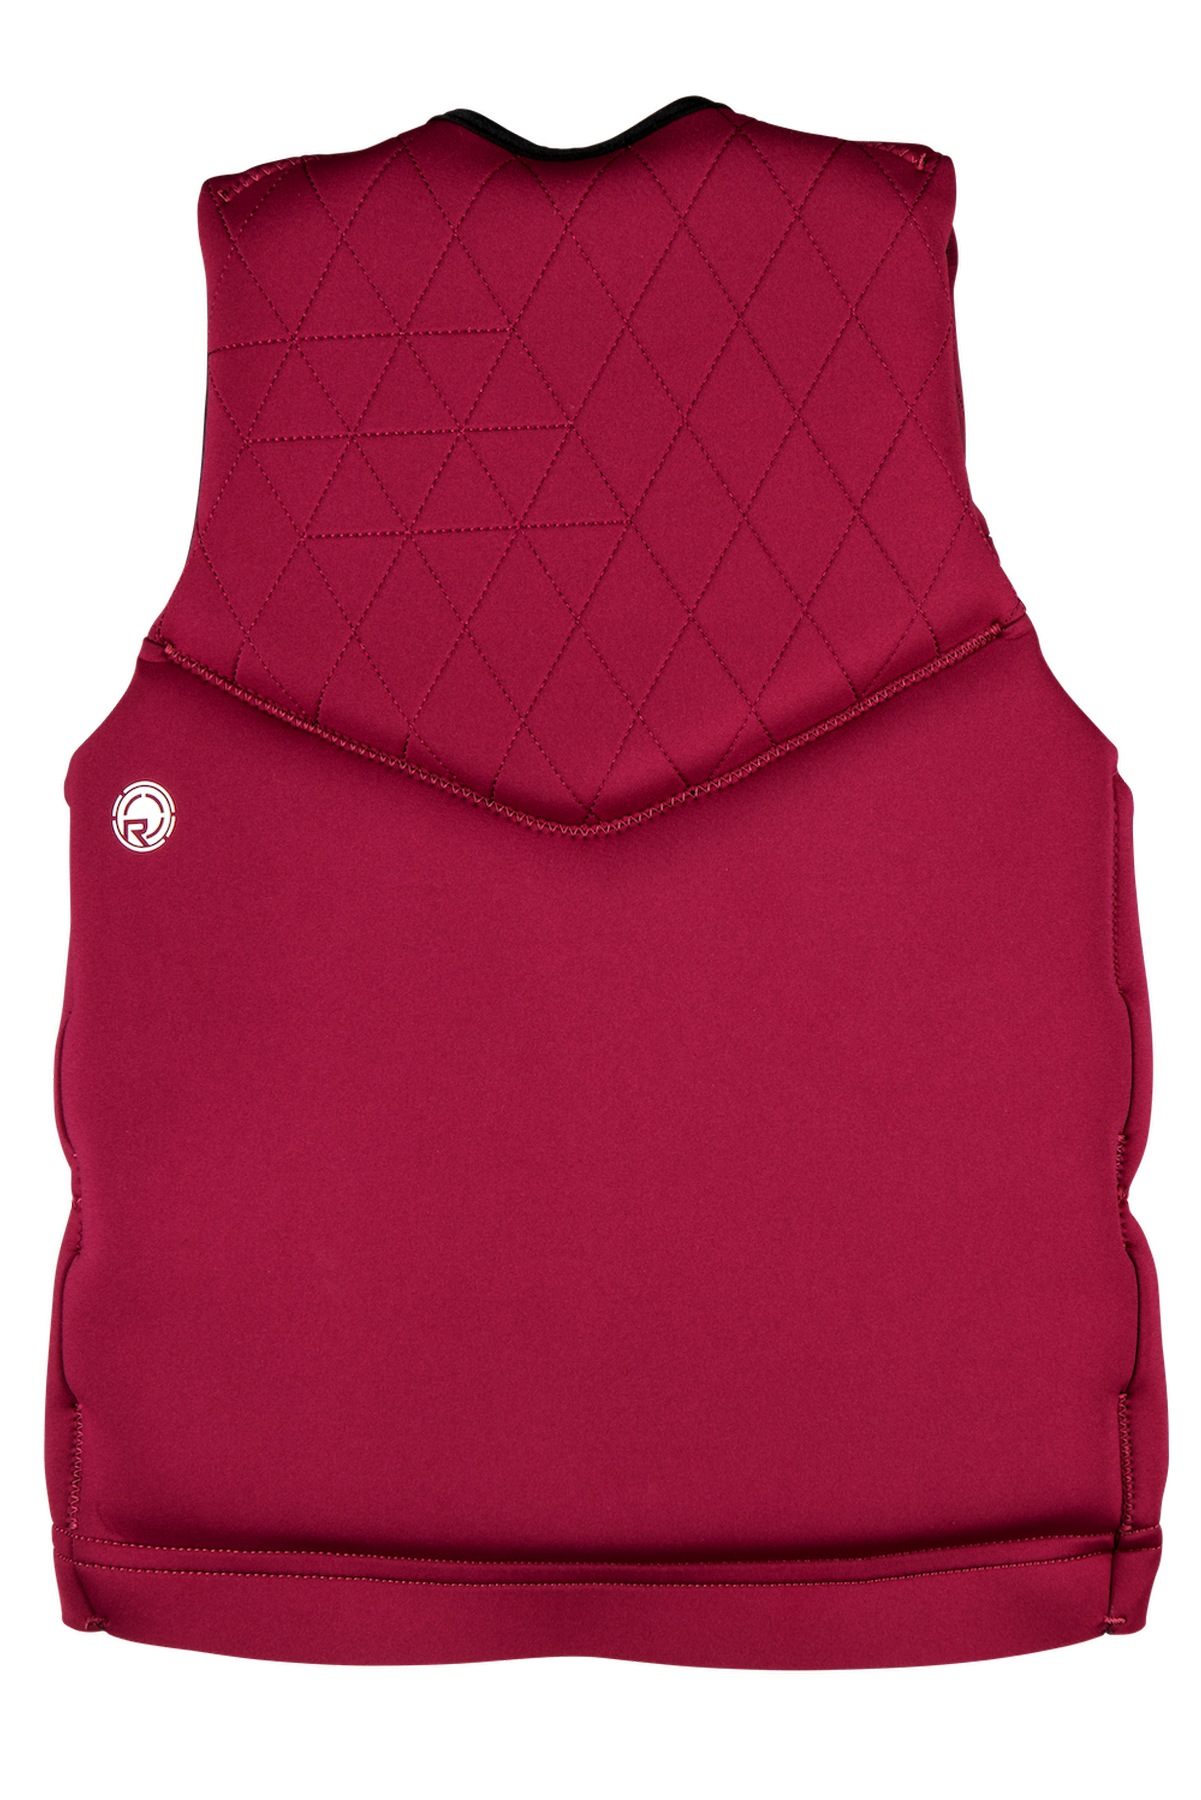 Cameo 3.0 - Women's CGA Life Vest